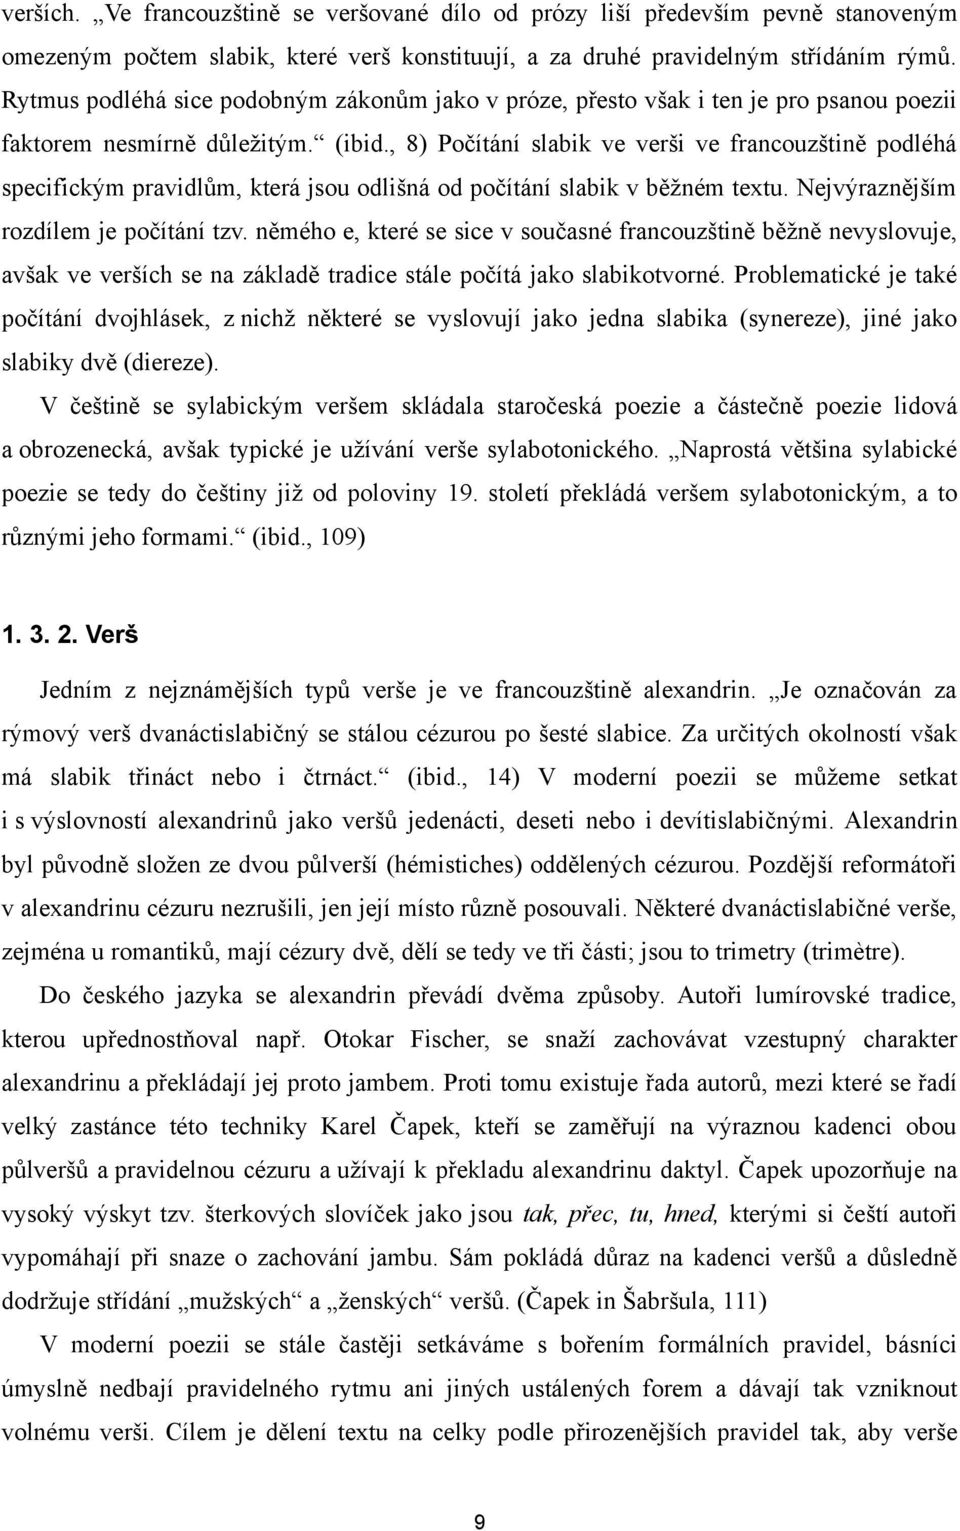 PŘEKLADOVÉ VARIANTY APOLLINAIROVA PÁSMA - PDF Stažení zdarma